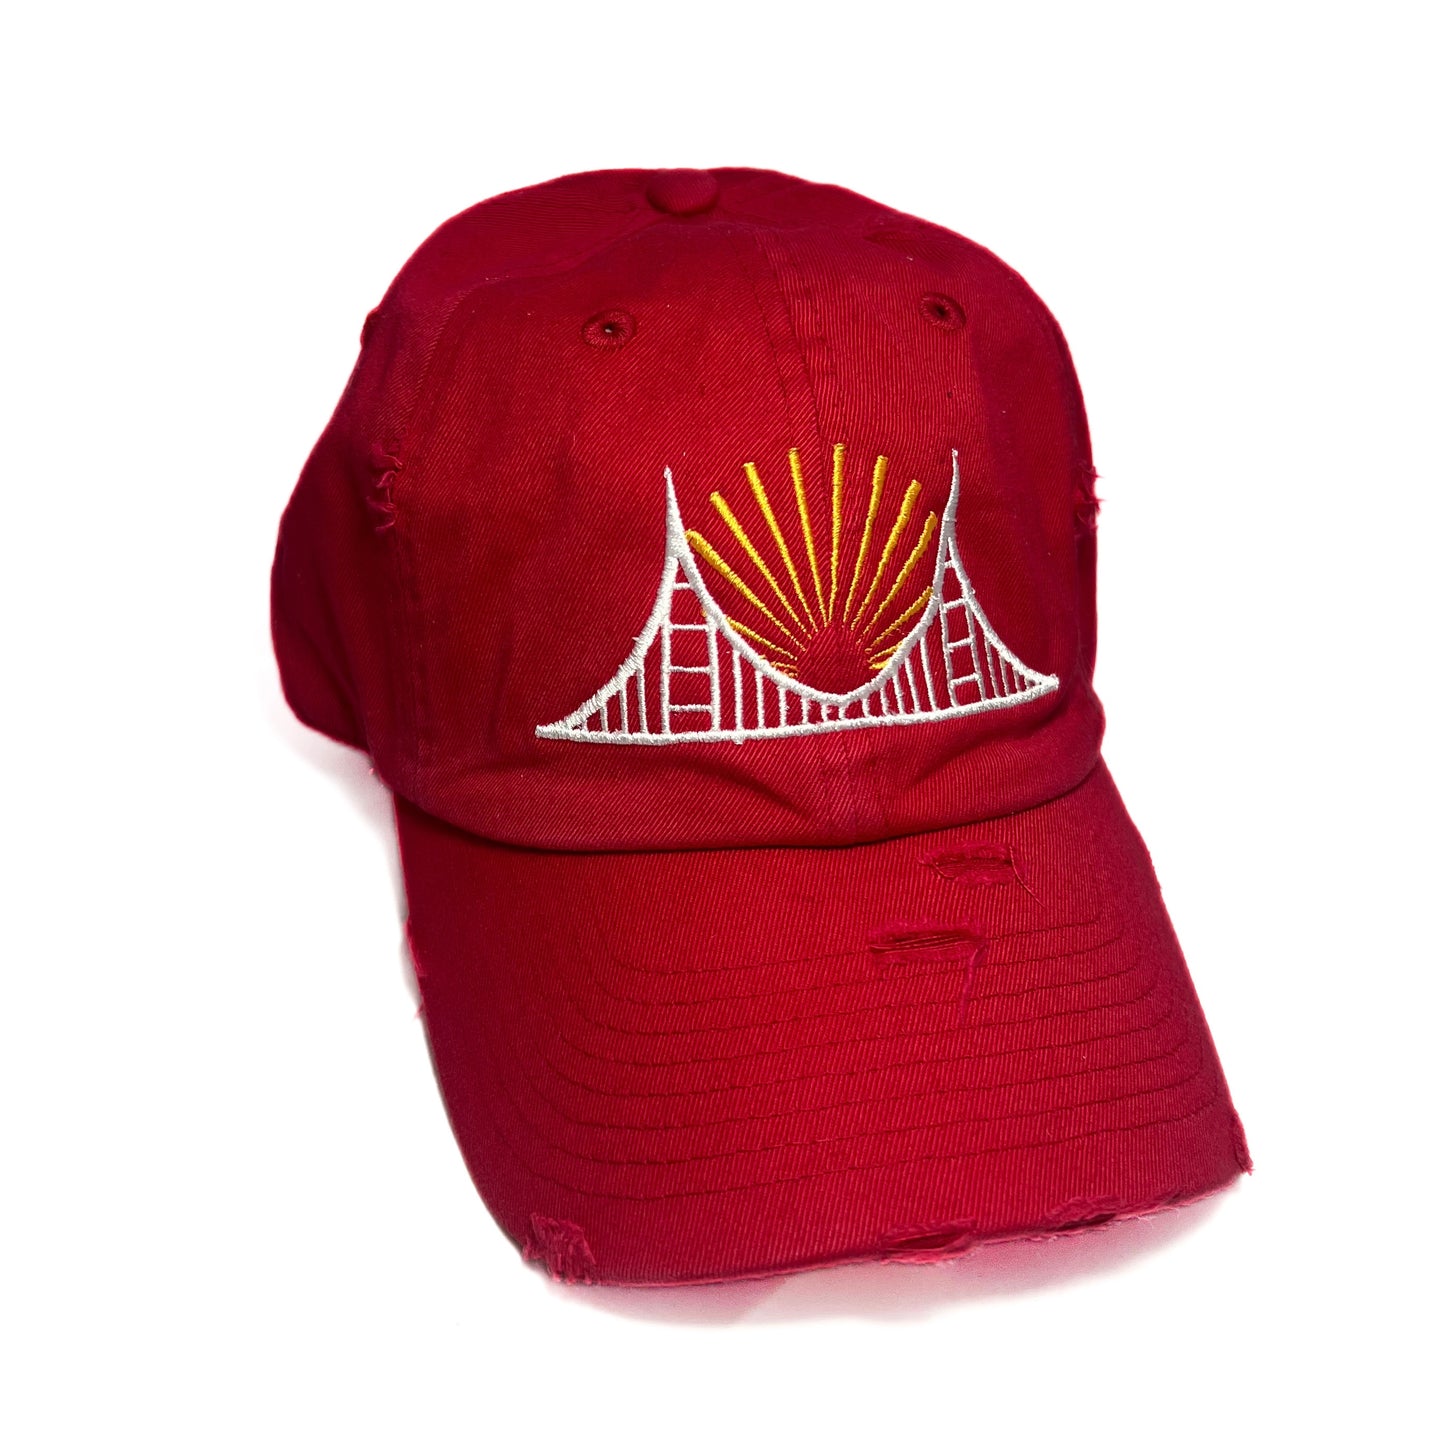 Bay Area Dad Hat